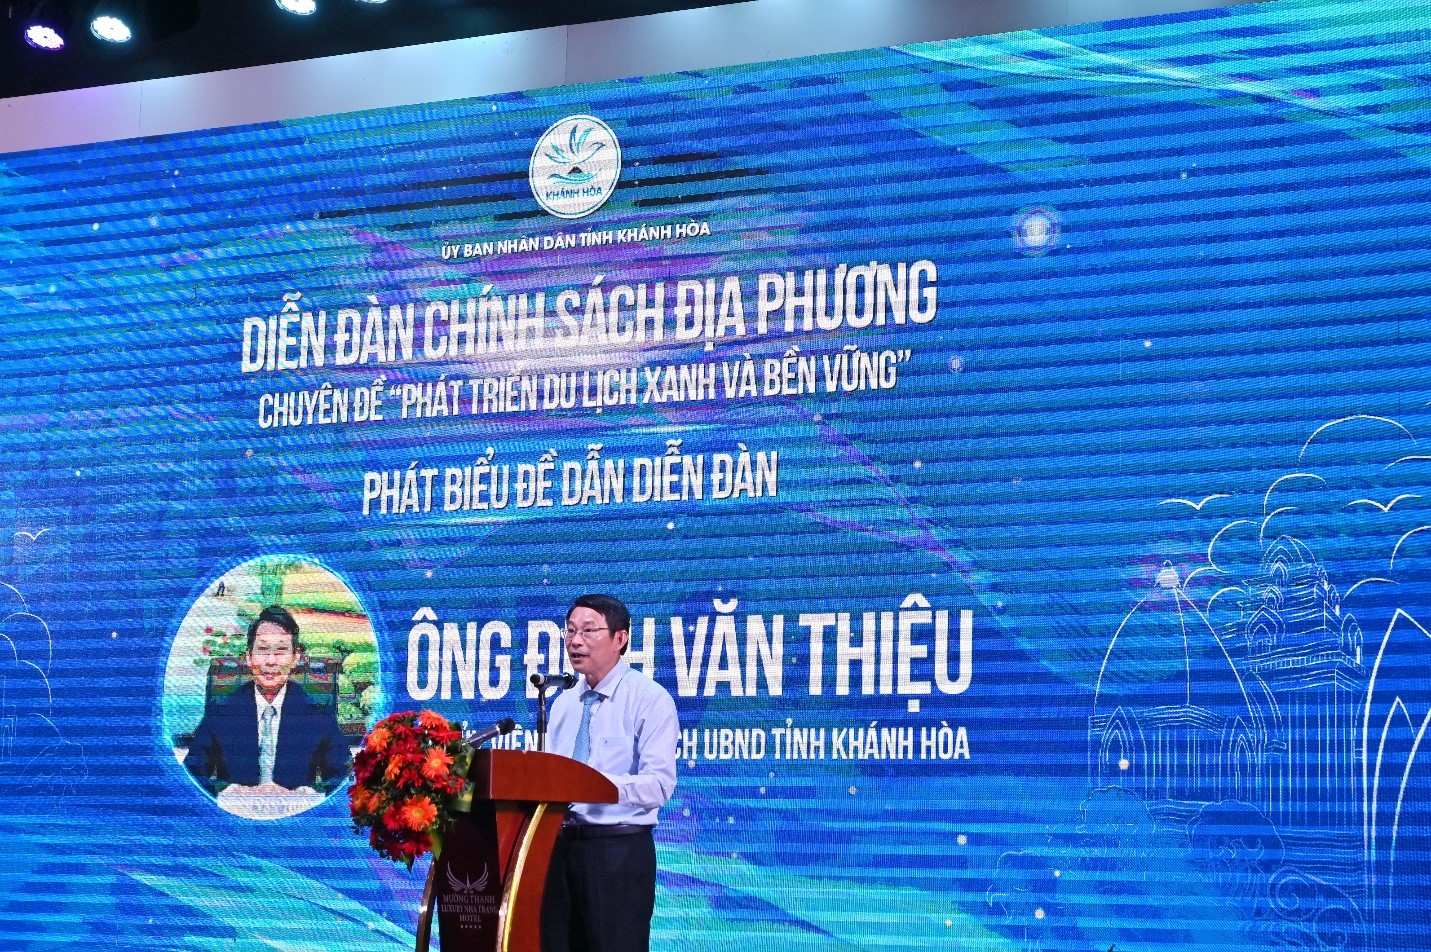 Ông Đinh Văn Thiệu Phó Chủ tịch UBND tỉnh Khánh Hòa phát biểu Đề dẫn diễn đàn